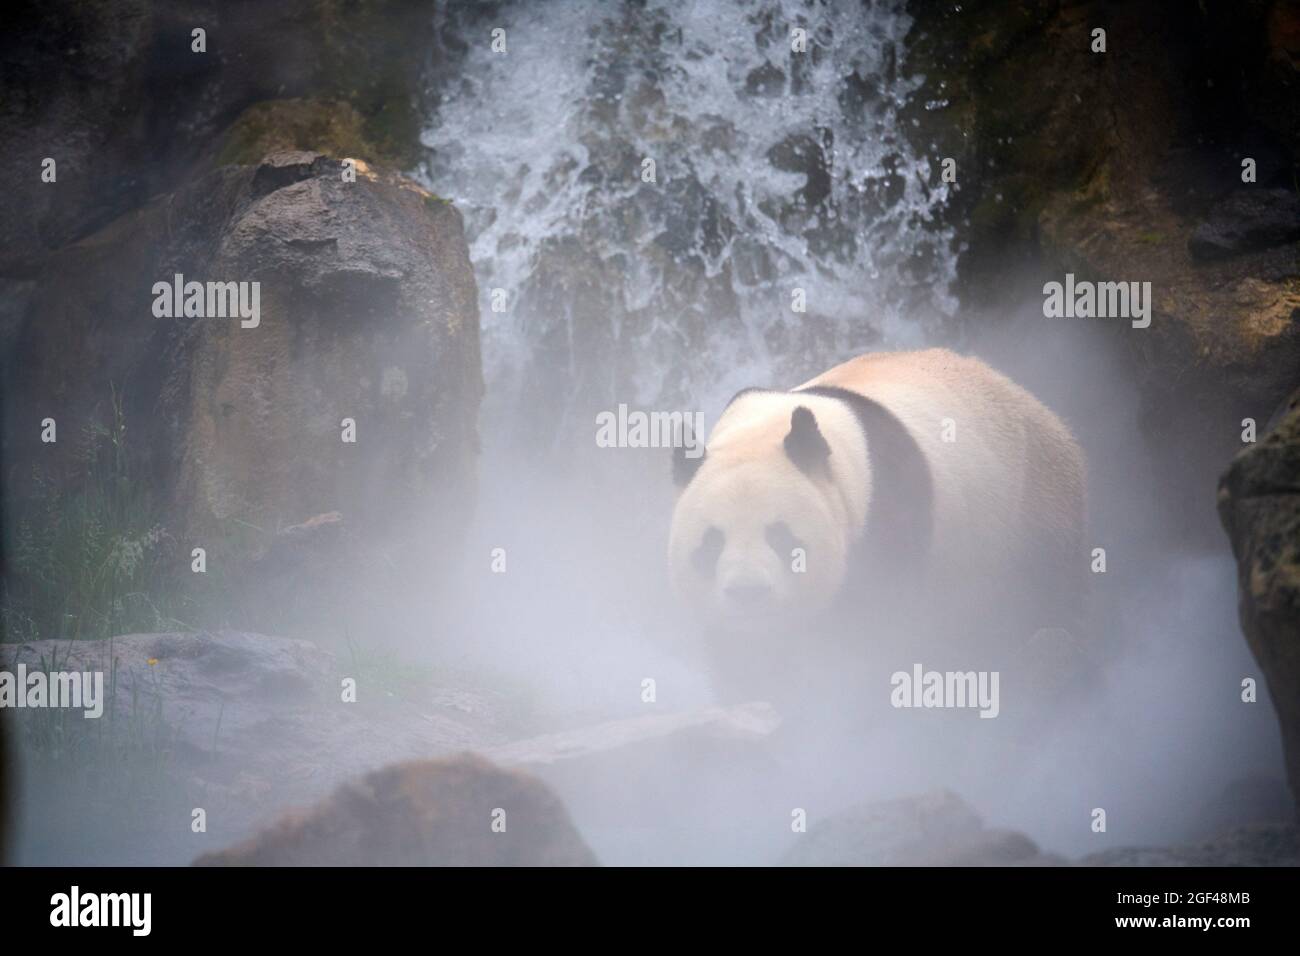 Panda gigante (Ailuropoda melanoleuca) macho en su recinto en niebla, cautivo en el zoológico de Beauval, Saint Aignan sur Cher, Francia. Se crea la niebla Foto de stock